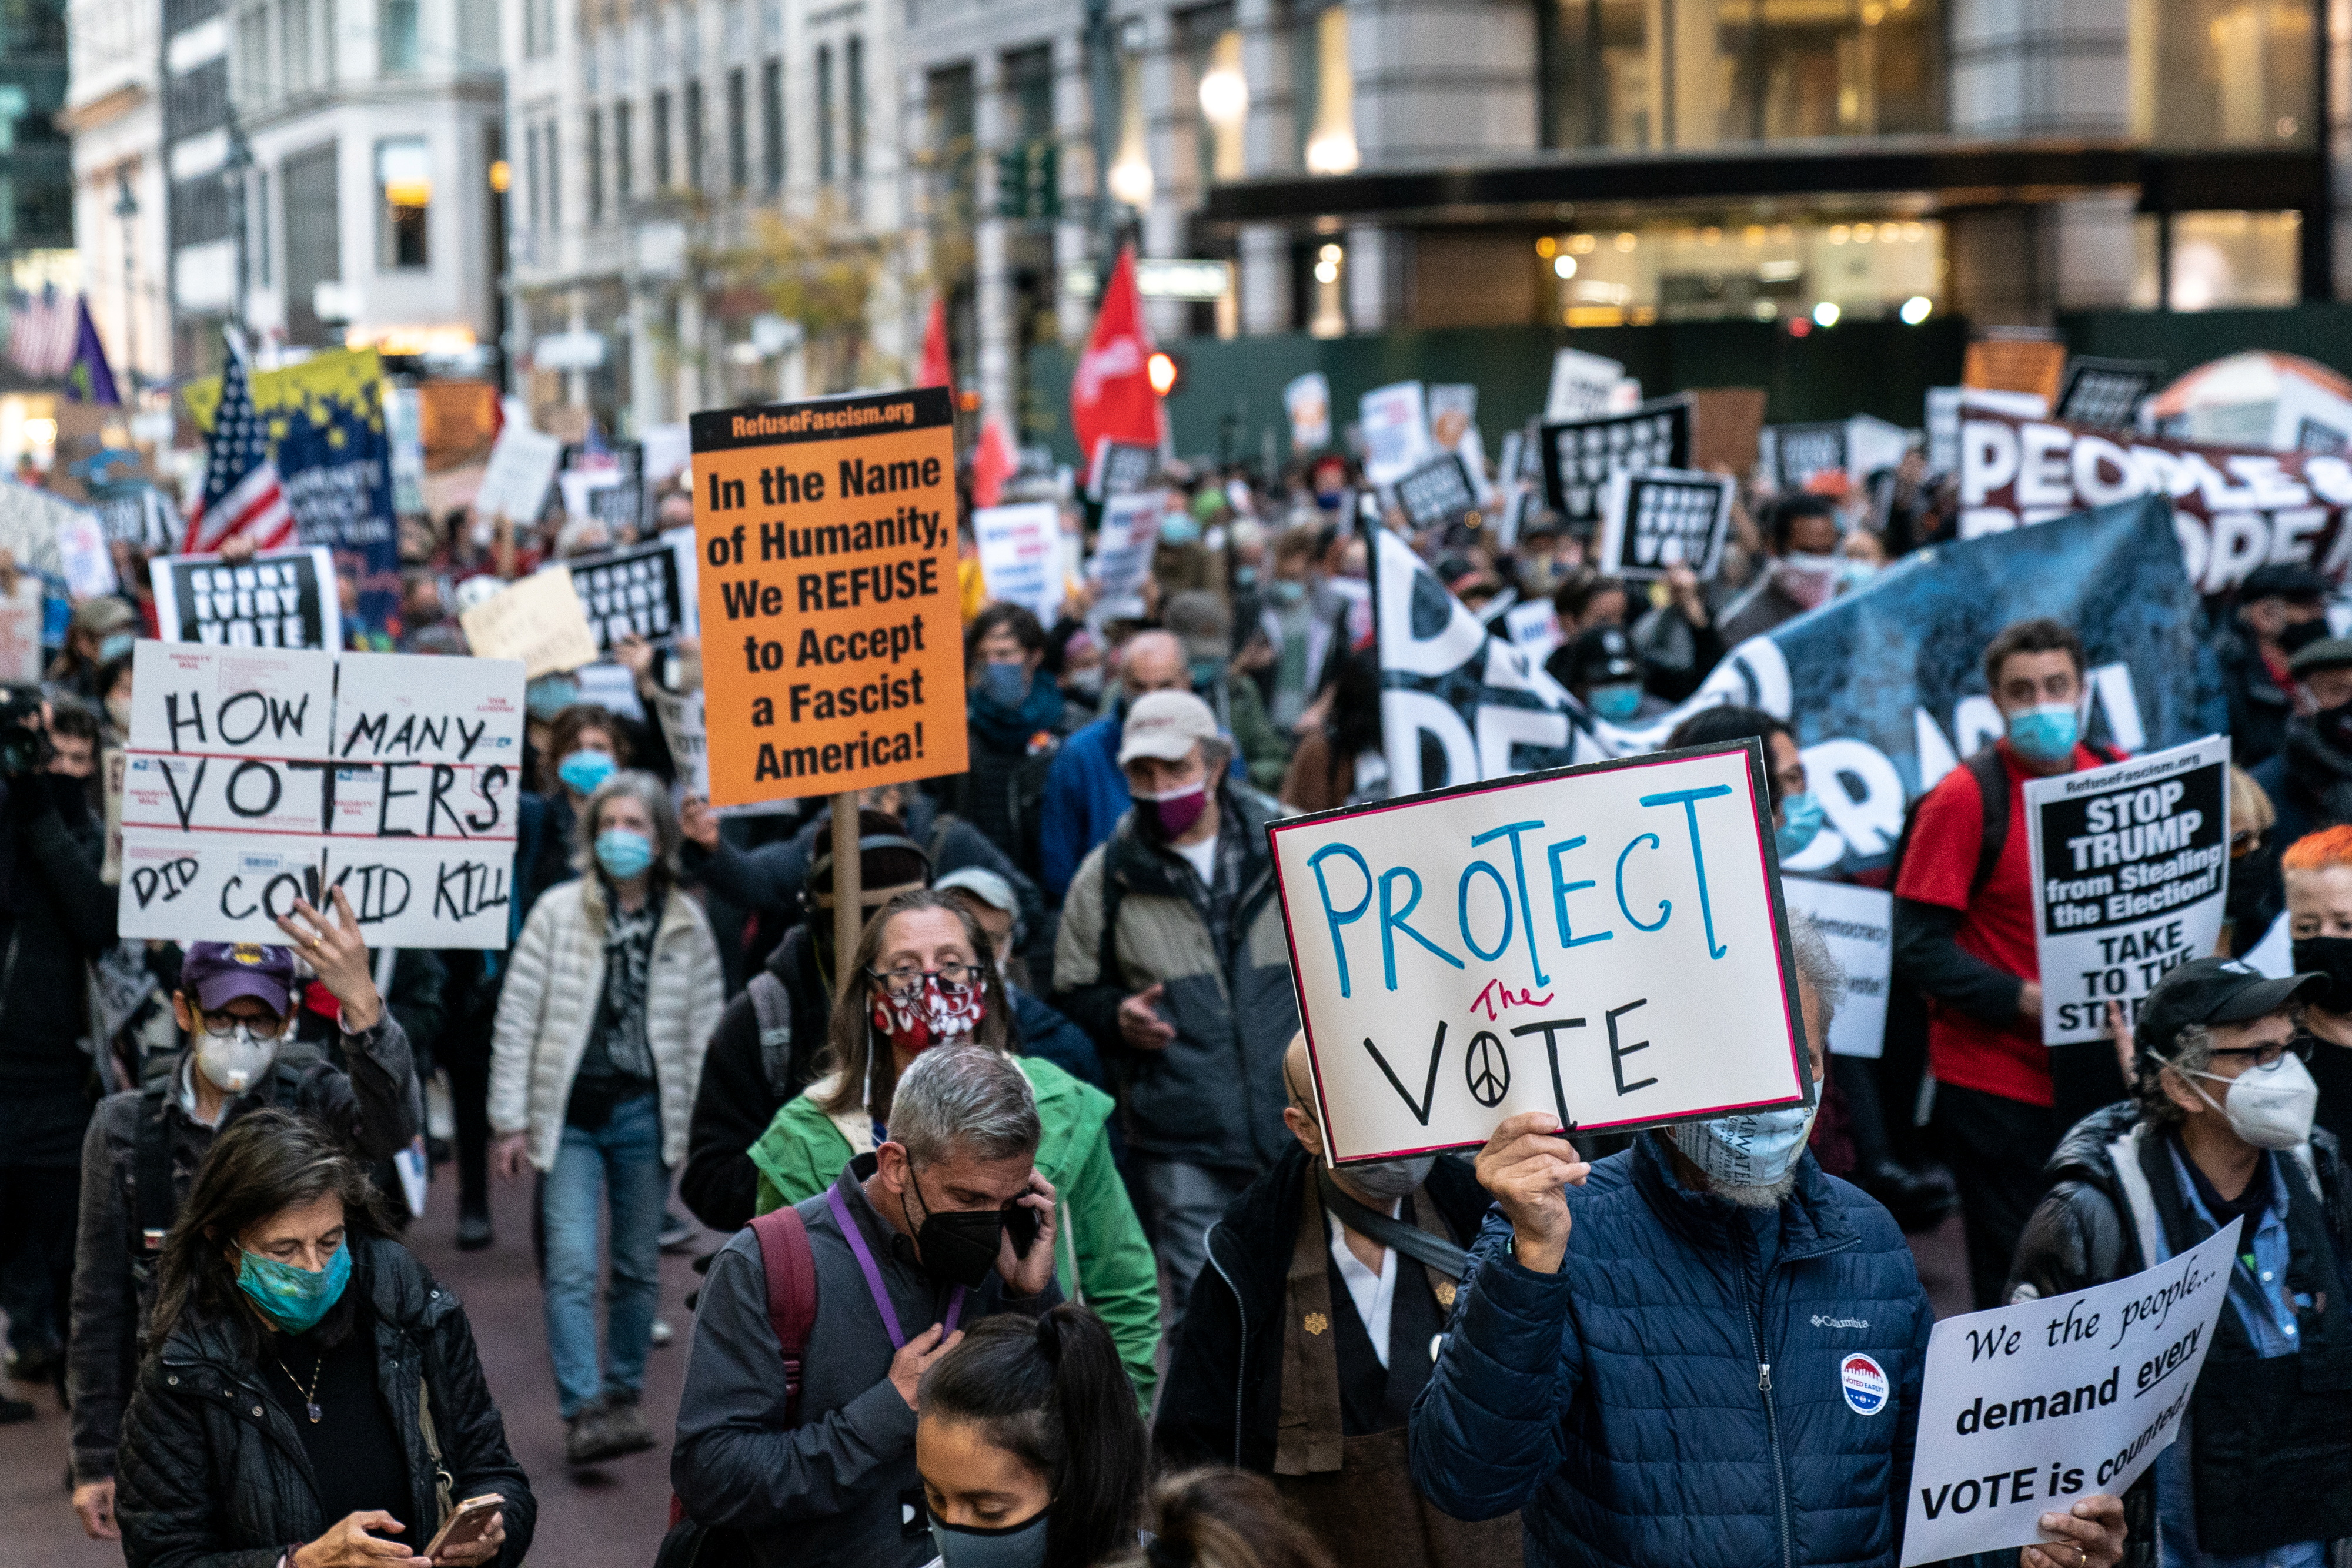 Marcha para "proteger el voto", en Manhattan (Reuters)